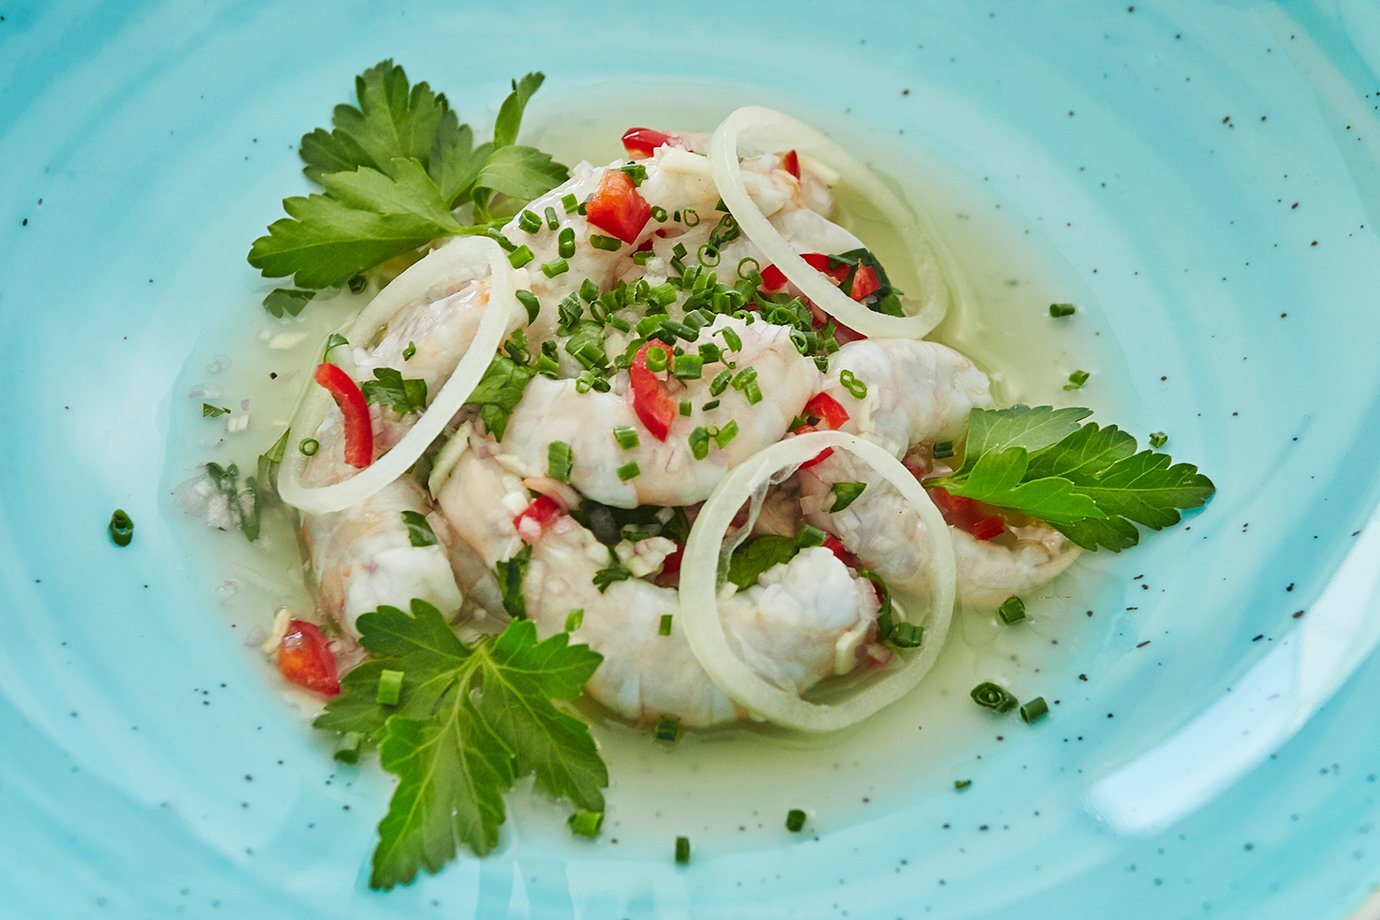 5. Shrimps auf Teller verteilen, nach Belieben mit frischen Kräutern dekorieren. Die Shrimps sofort geniessen.